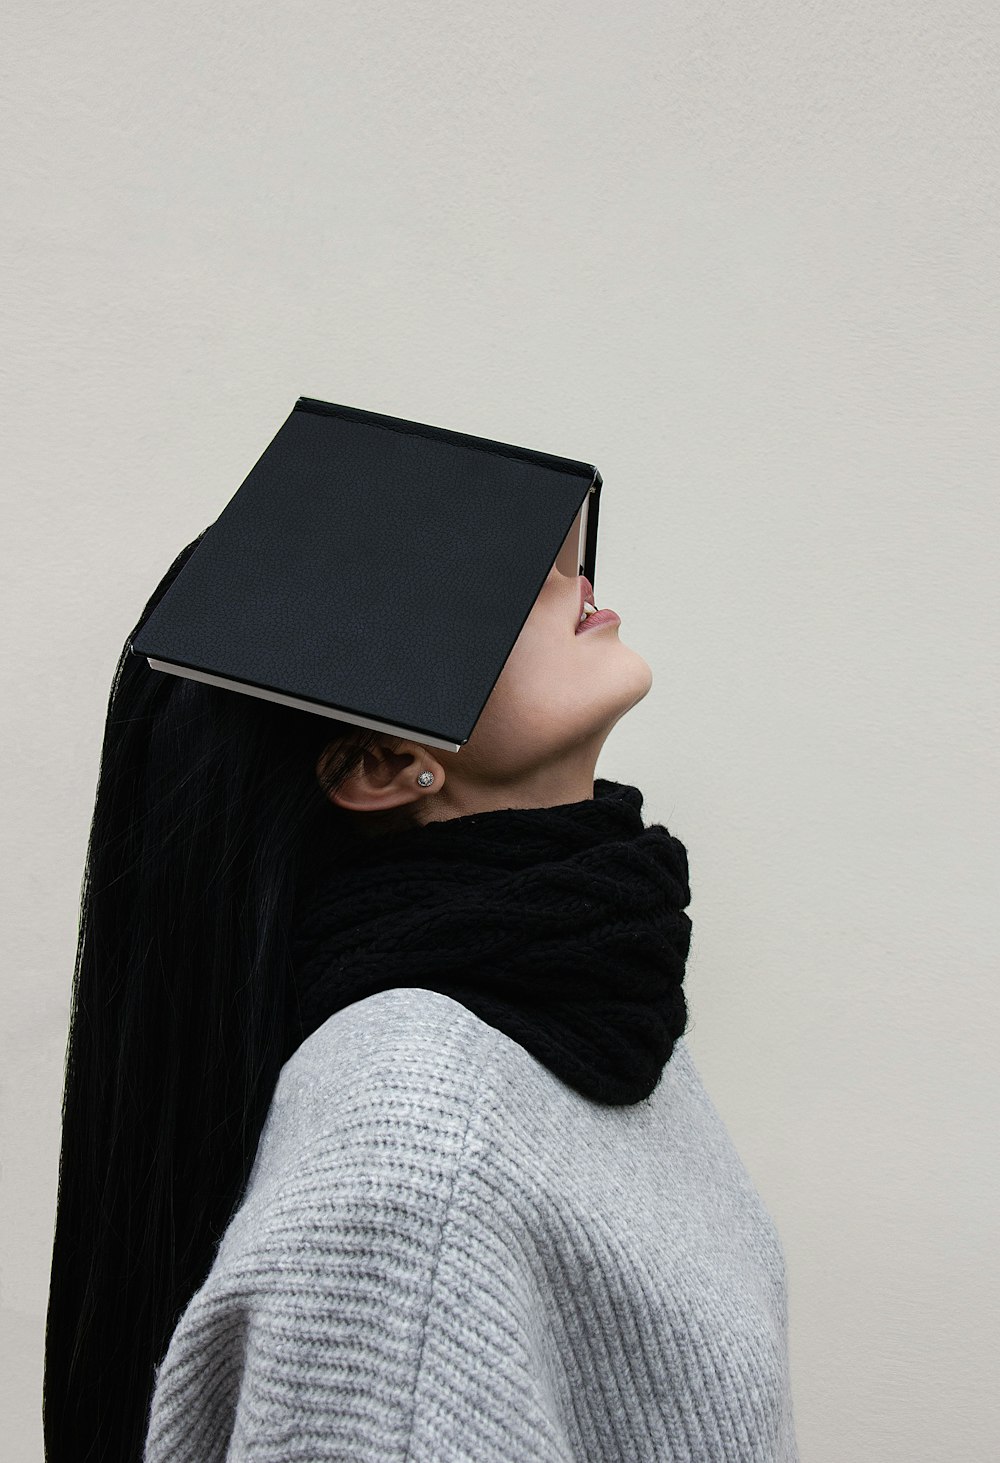 灰色のセーターと黒いスカーフで黒い本で顔を覆う女性